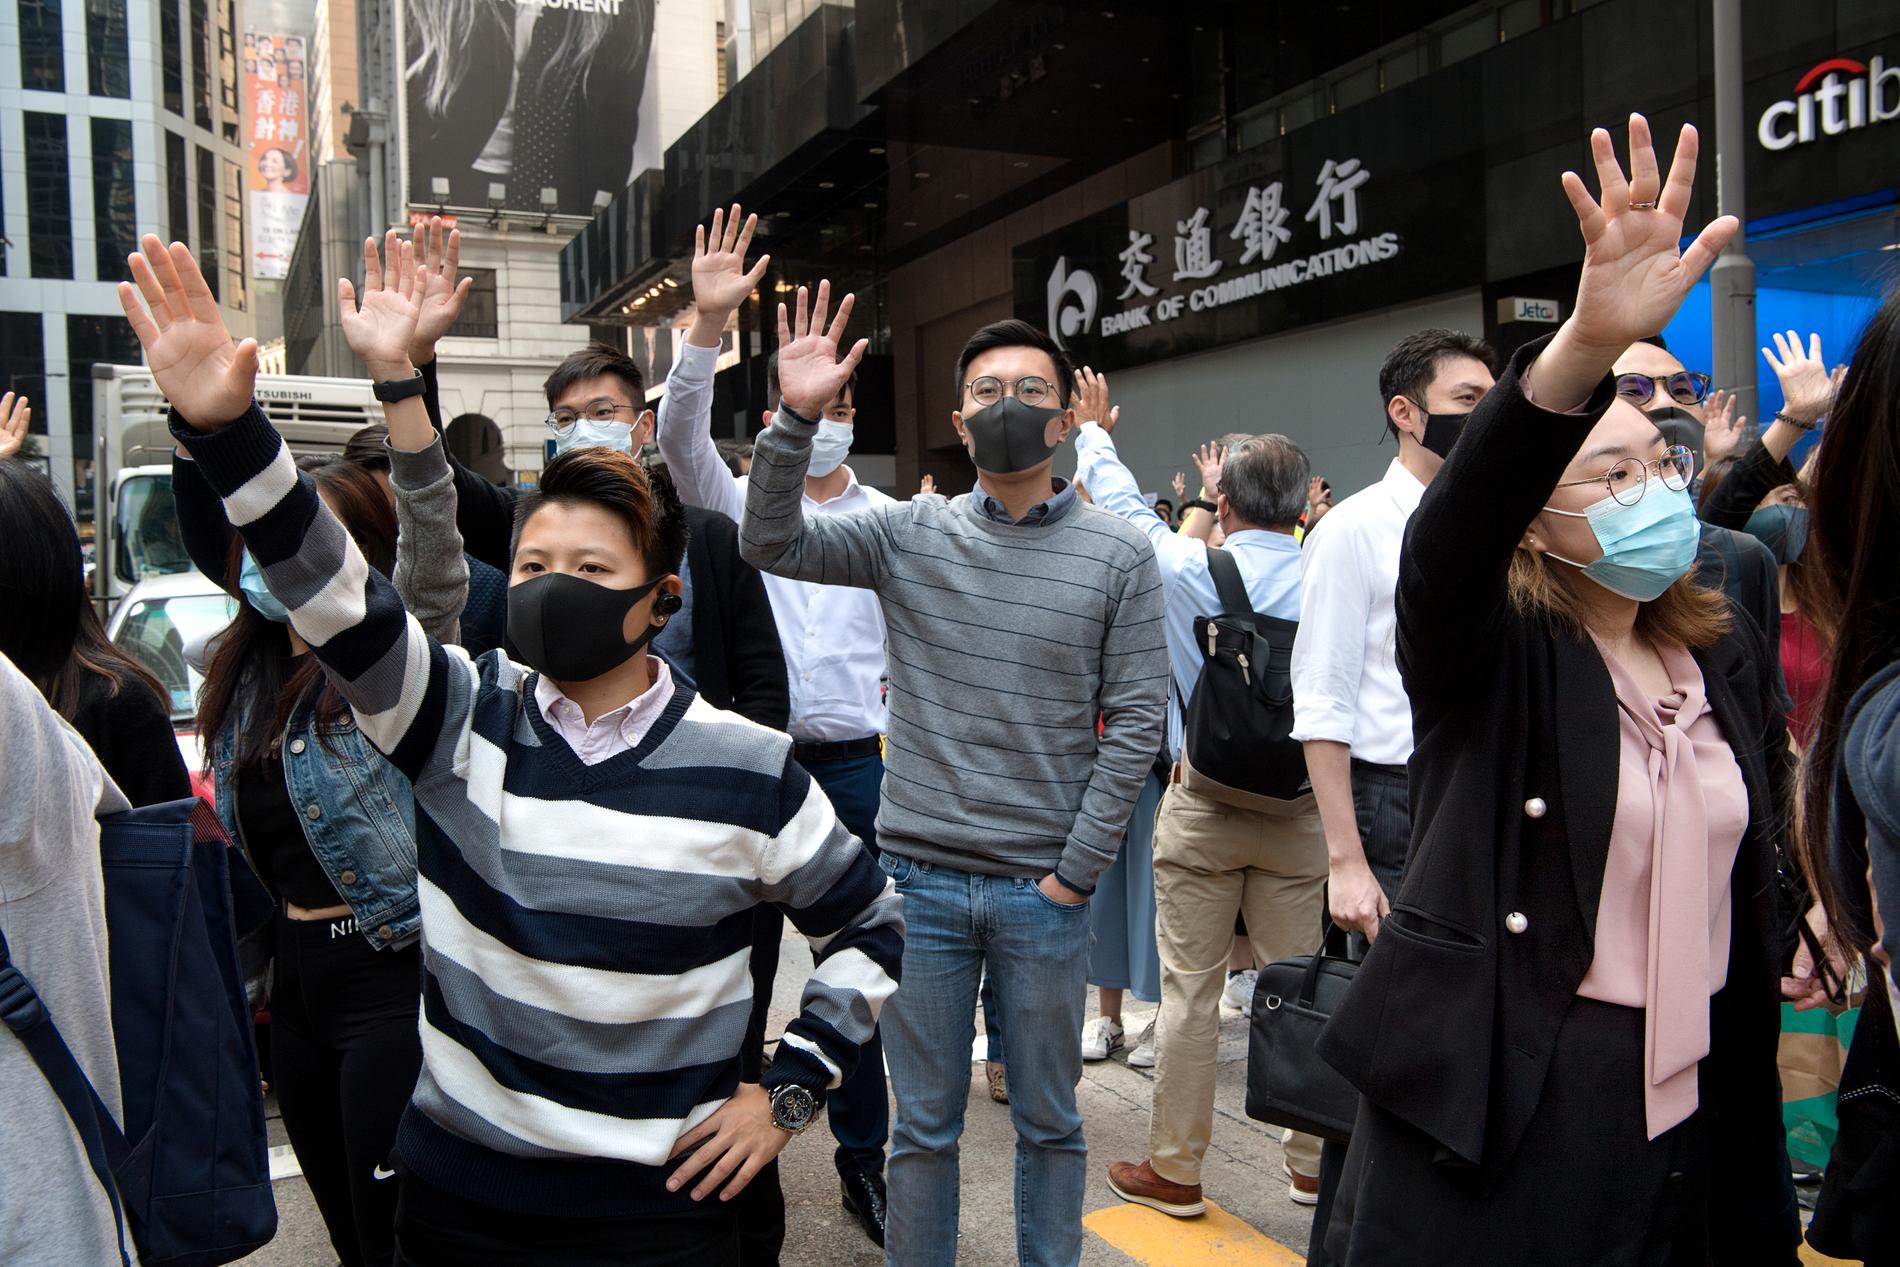 Anställda i Hongkongs finanskvarter demonstrerar på sin lunchrast i protest mot polisens brutalitet, men också för att visa att de stödjer demokratirörelsens krav på den lokala regeringen. Bilden är tagen i november 2019.